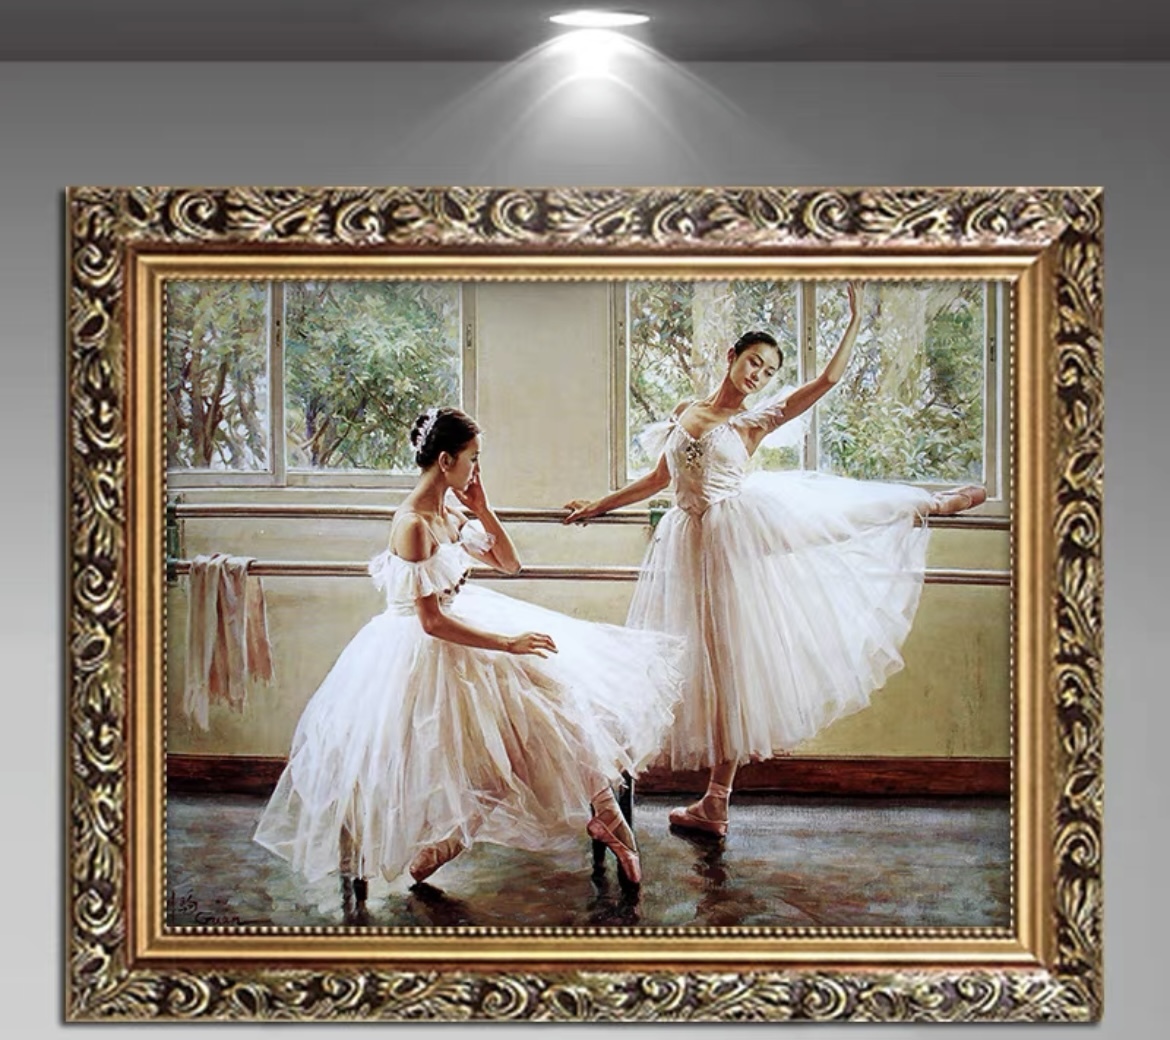 油絵 現代 装飾画 バレエを踊る女の子 壁画 居間の通路の絵 50cmx60cm_画像1